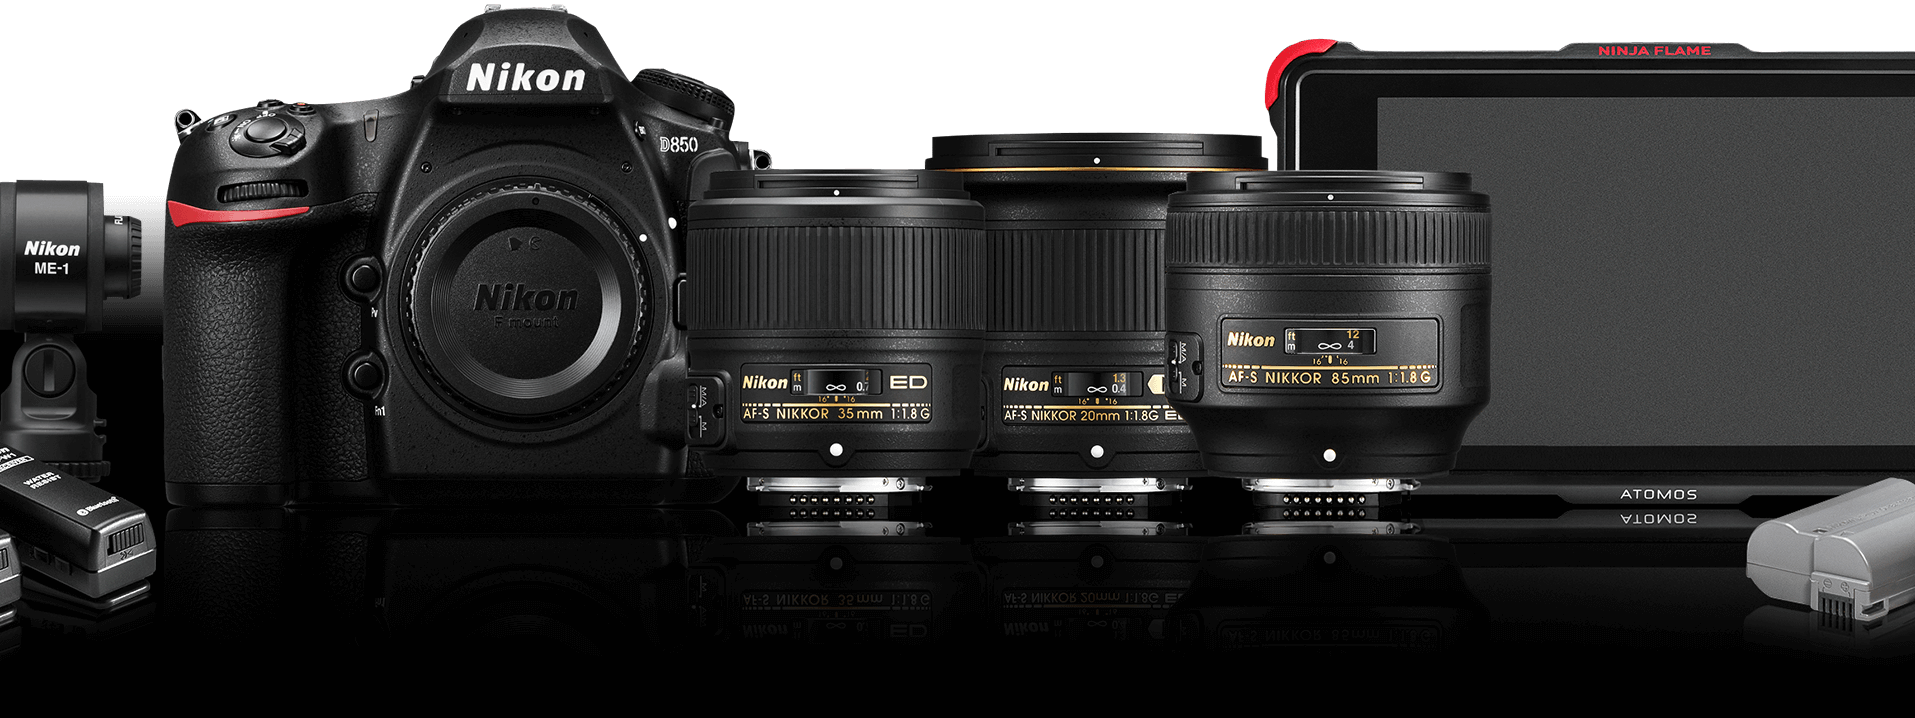 Nikon ra bộ thiết bị cho quay phim bao gồm máy D850, màn hình chuyên nghiệp, 3 ống kính